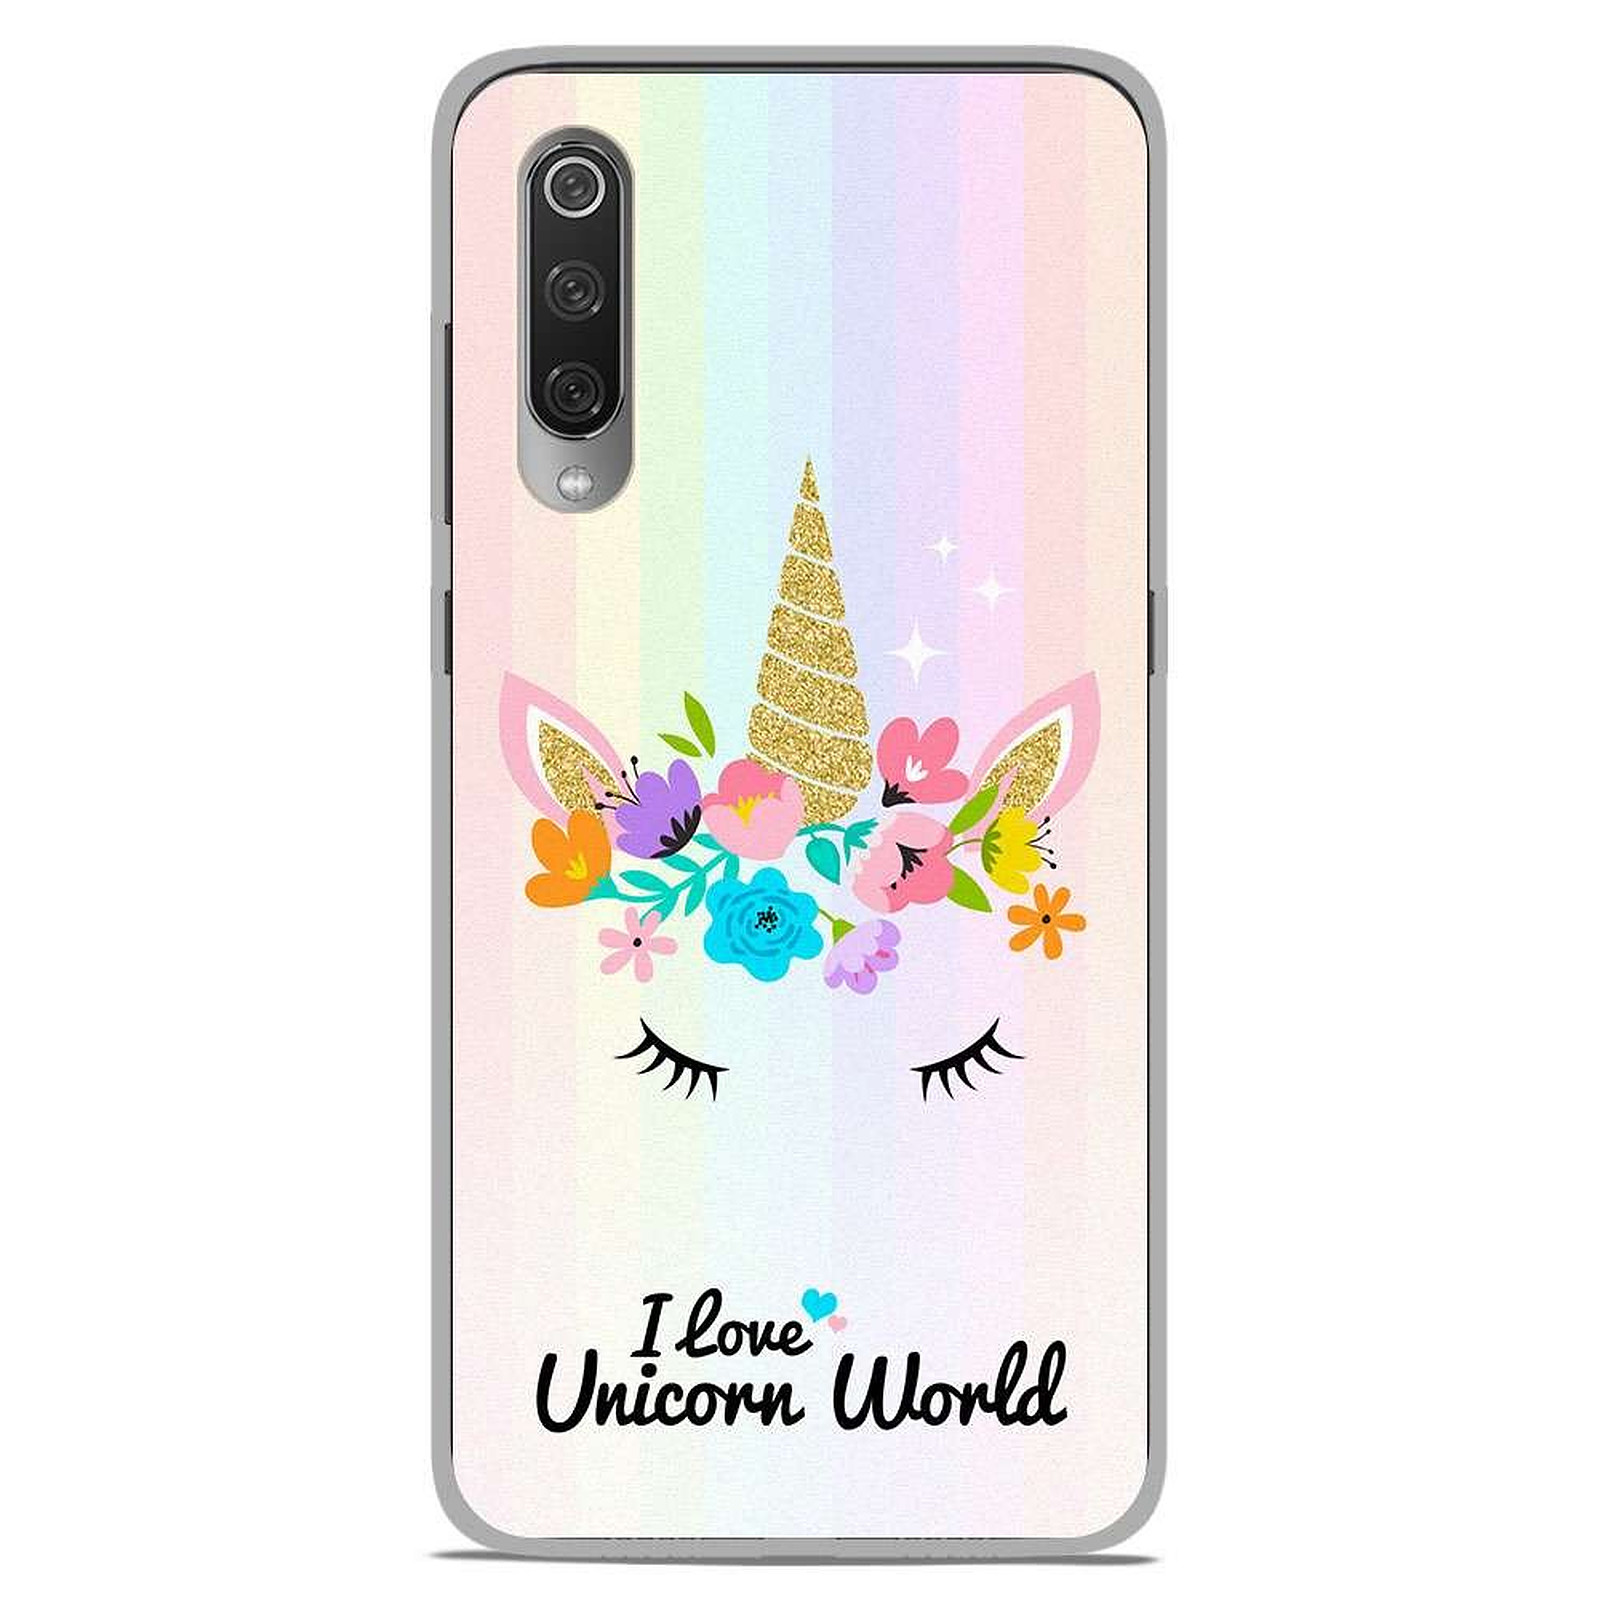 1001 Coques Coque silicone gel Xiaomi Mi 9 SE motif Unicorn World - Coque telephone 1001Coques